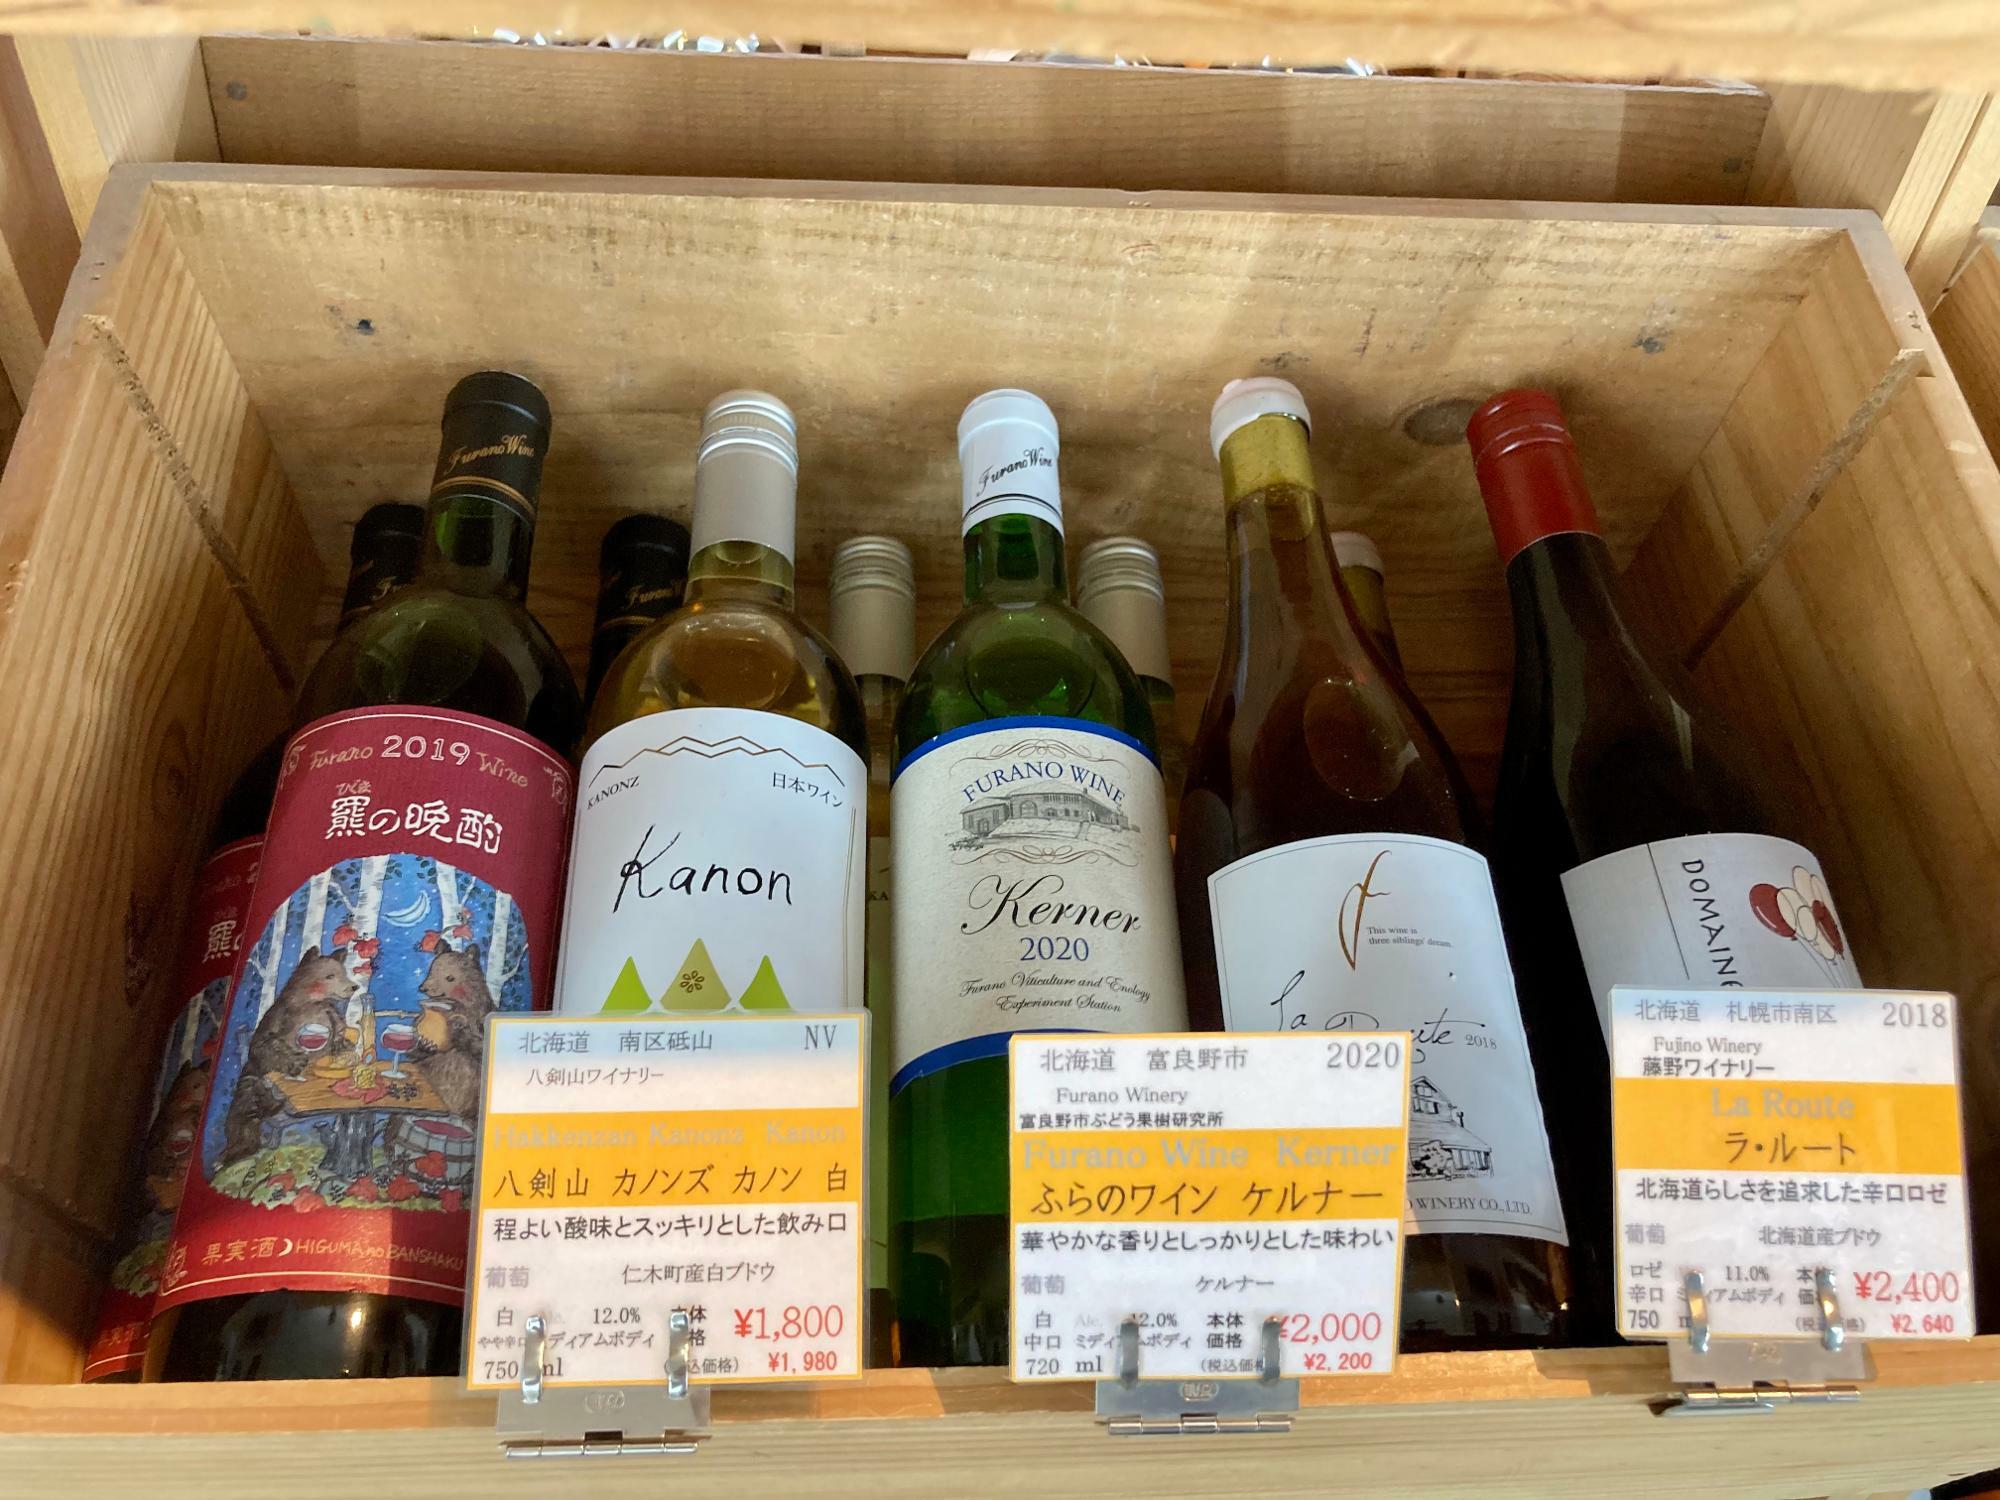 なかなか流通量が少ない八剣山ワイナリー、そして札幌のナチュラル系の旗手、藤野ワイナリーや、ふらのワインも